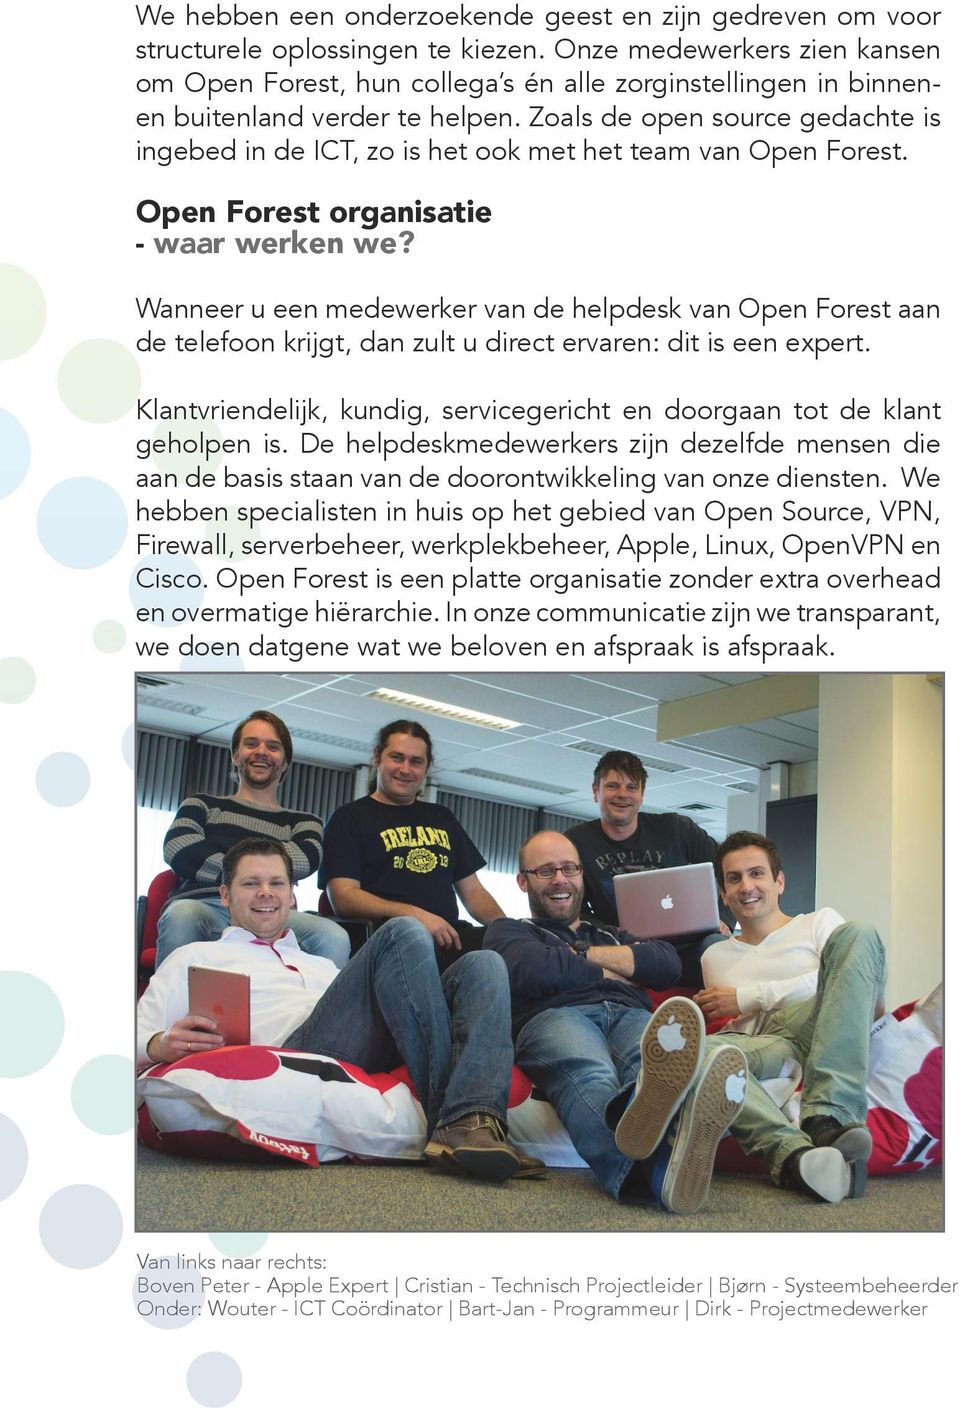 Zoals de open source gedachte is ingebed in de ICT, zo is het ook met het team van Open Forest. Open Forest organisatie - waar werken we?